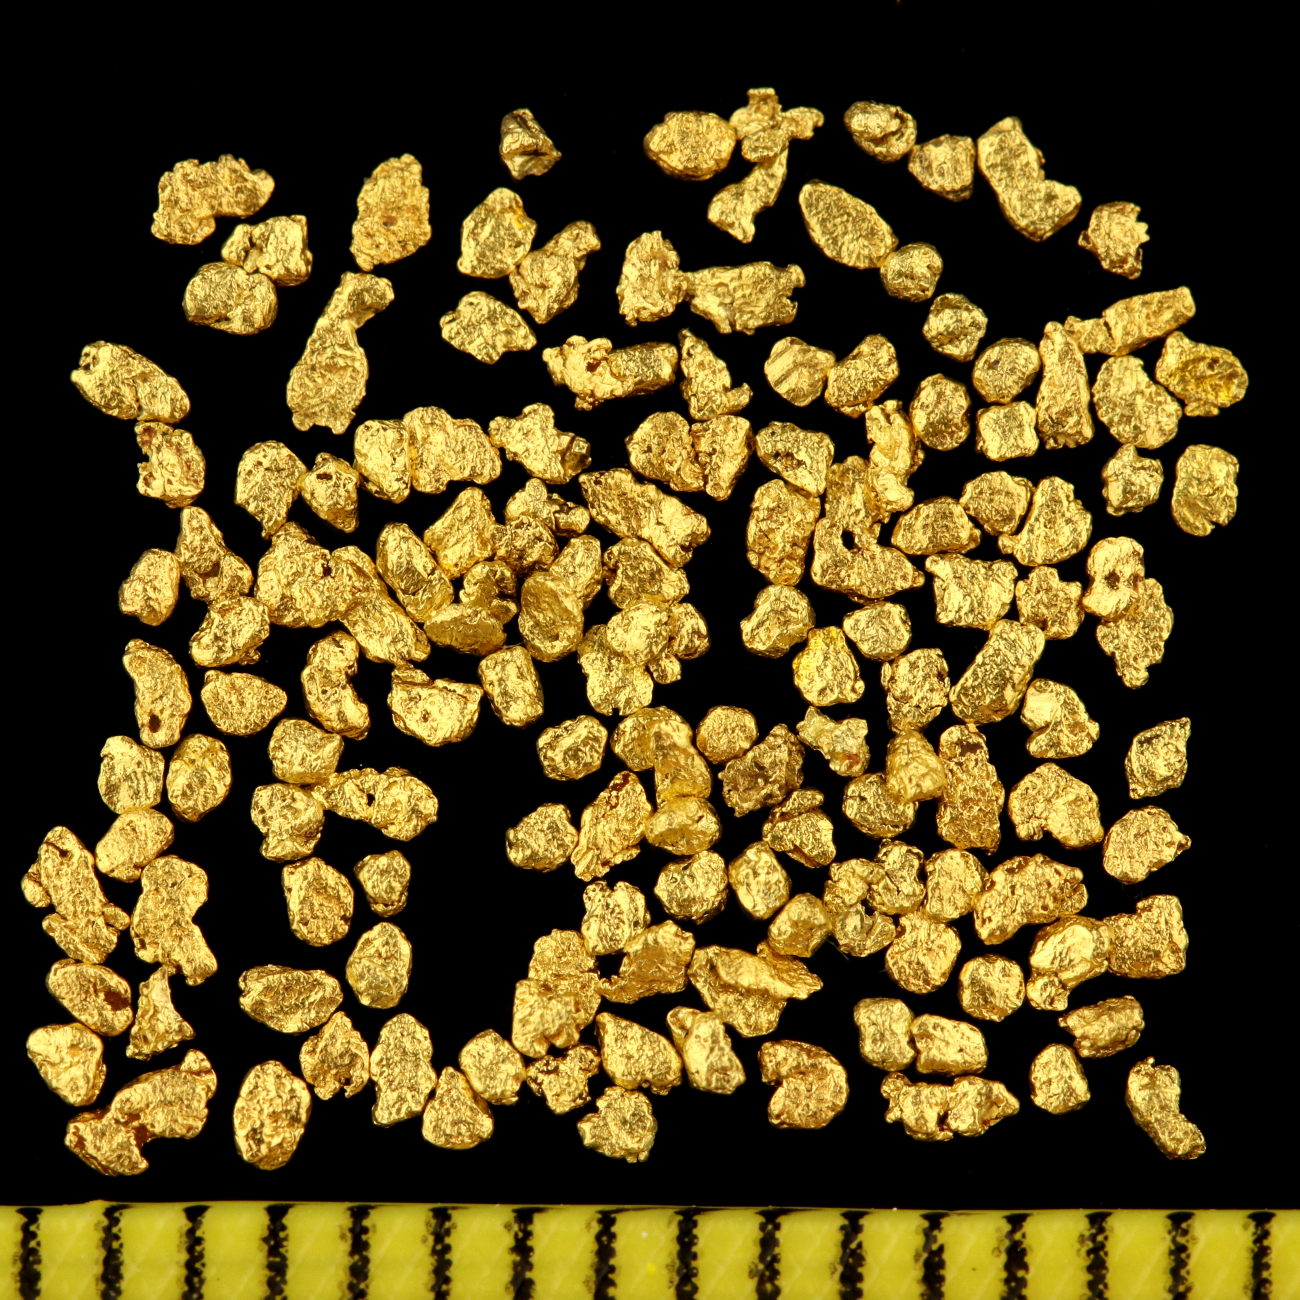 102050 Echte Goldnuggets aus Alaska 1 mm 20-23 Karat Münze Barren Schmuck 